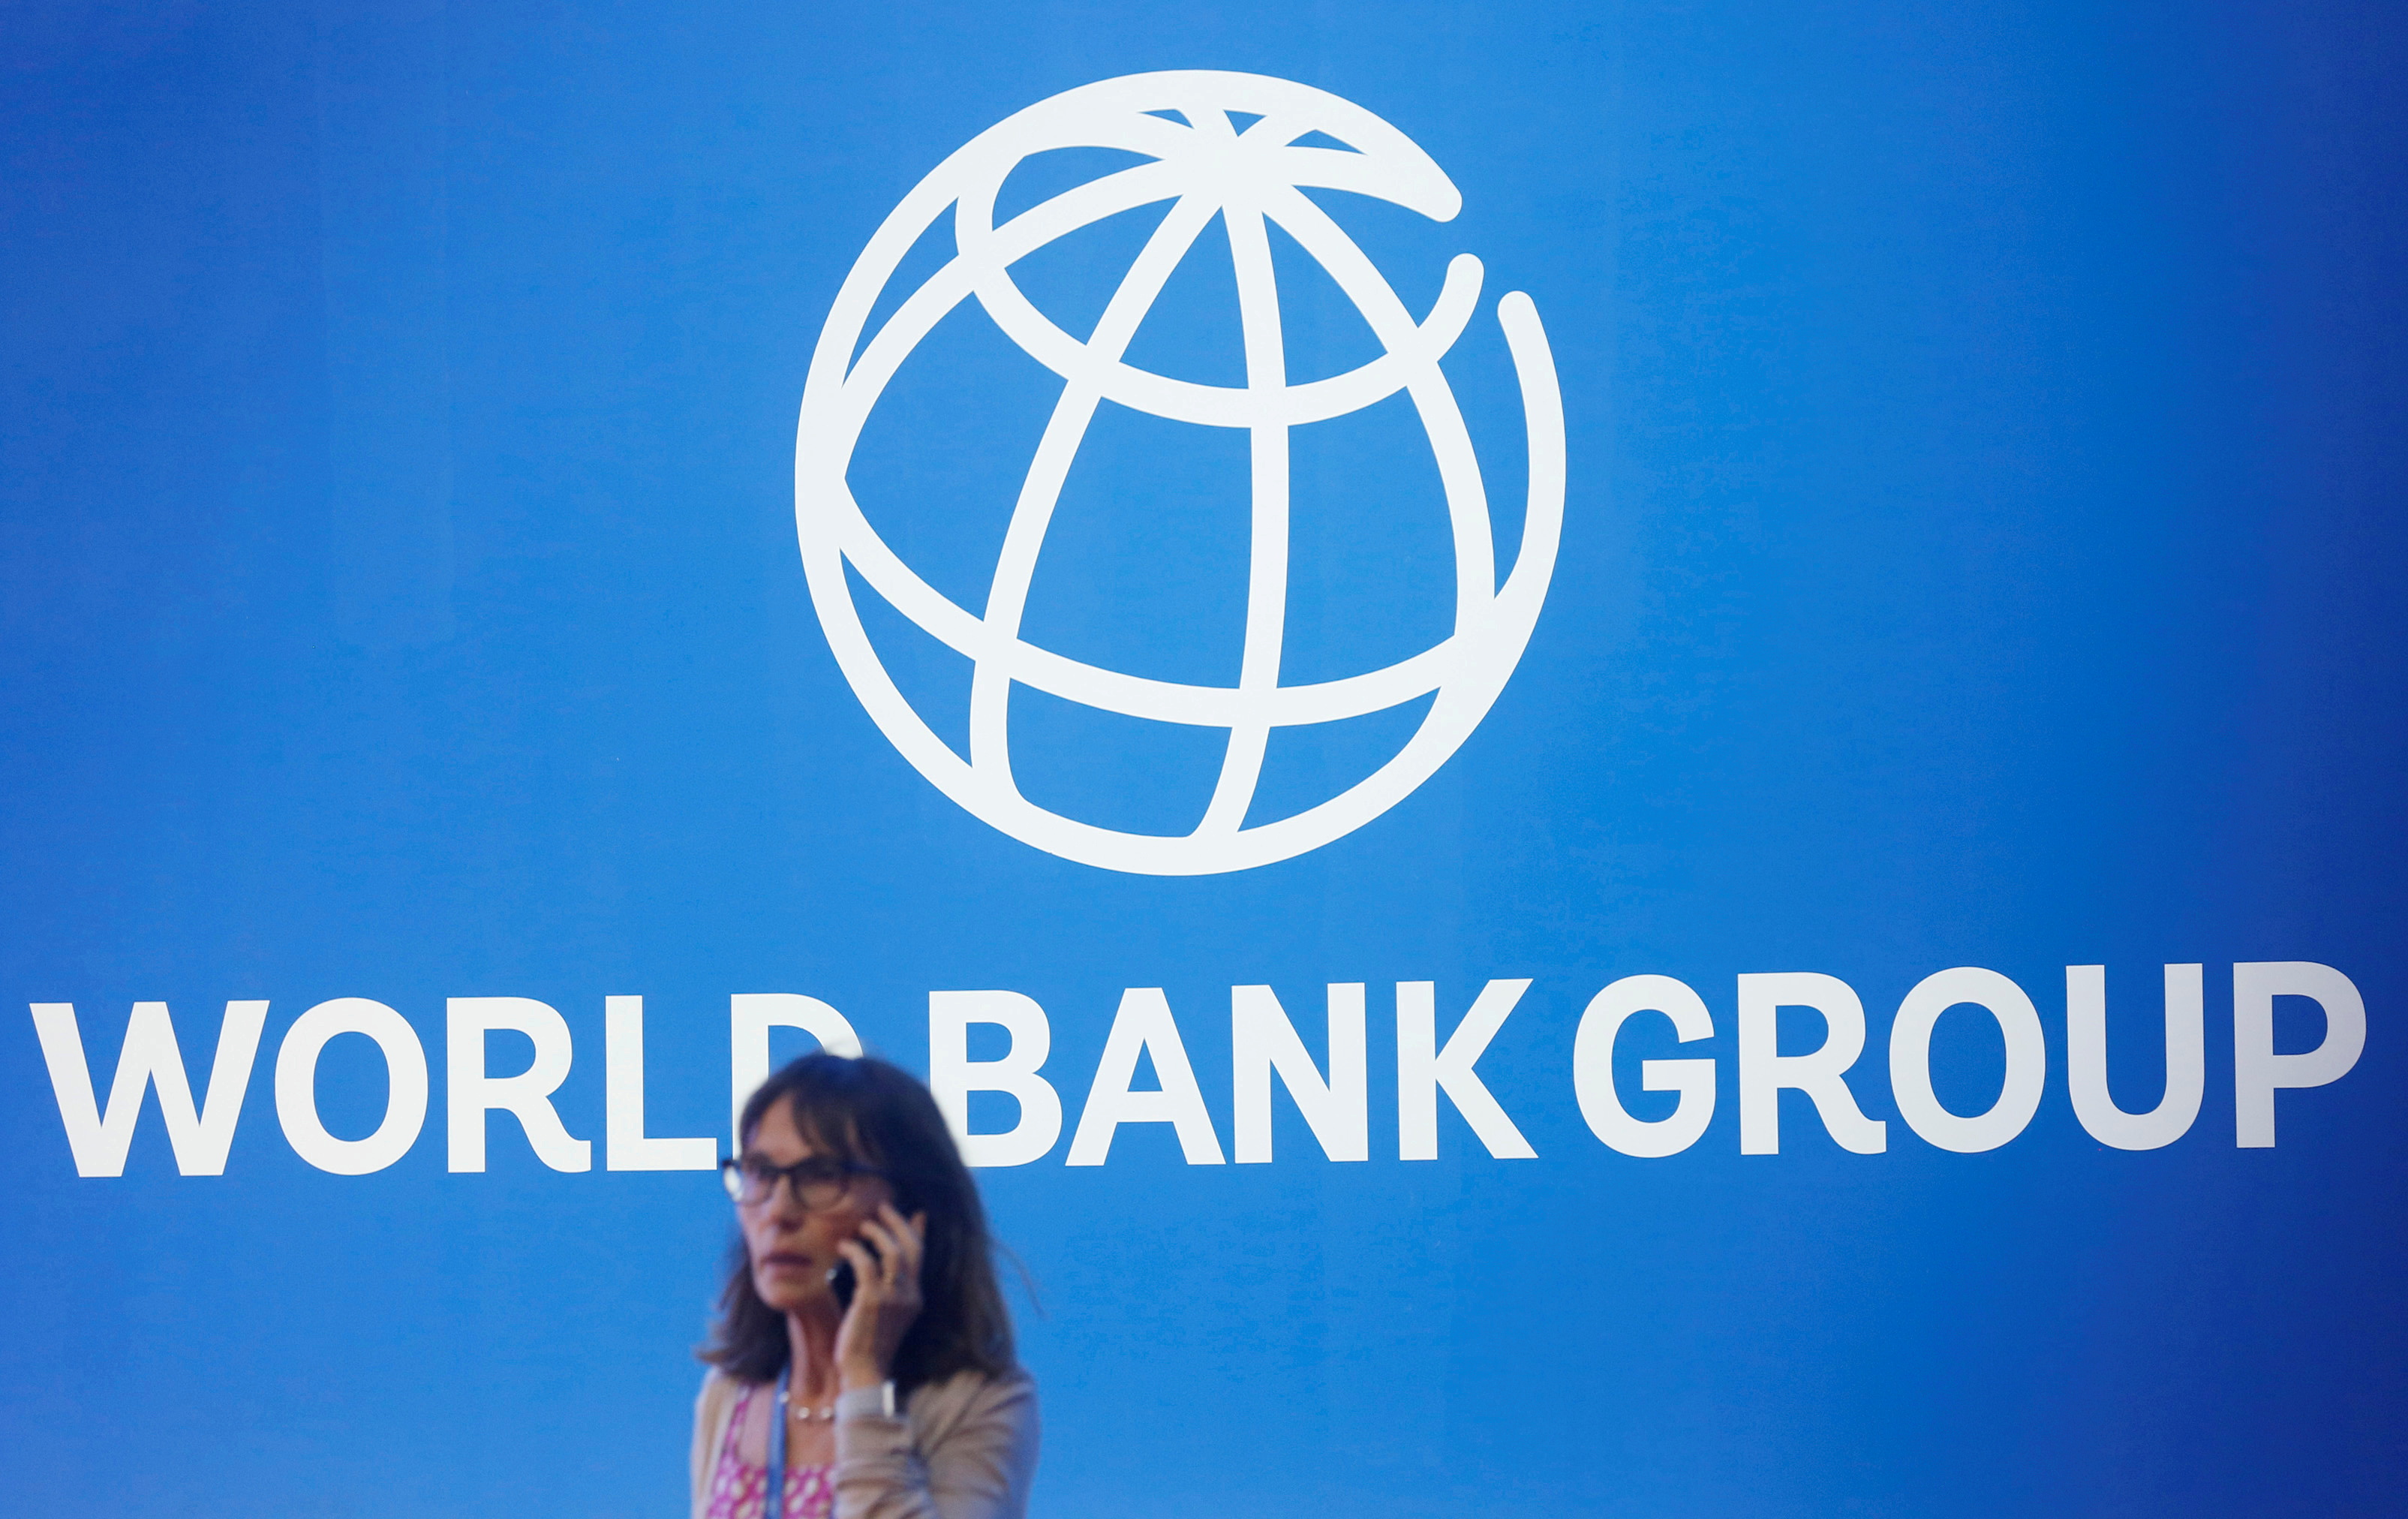 Фонд всемирный банк. Всемирный банк. Всемирный банк ООН. Всемирный банк картинки. Всемирный банк и Россия.